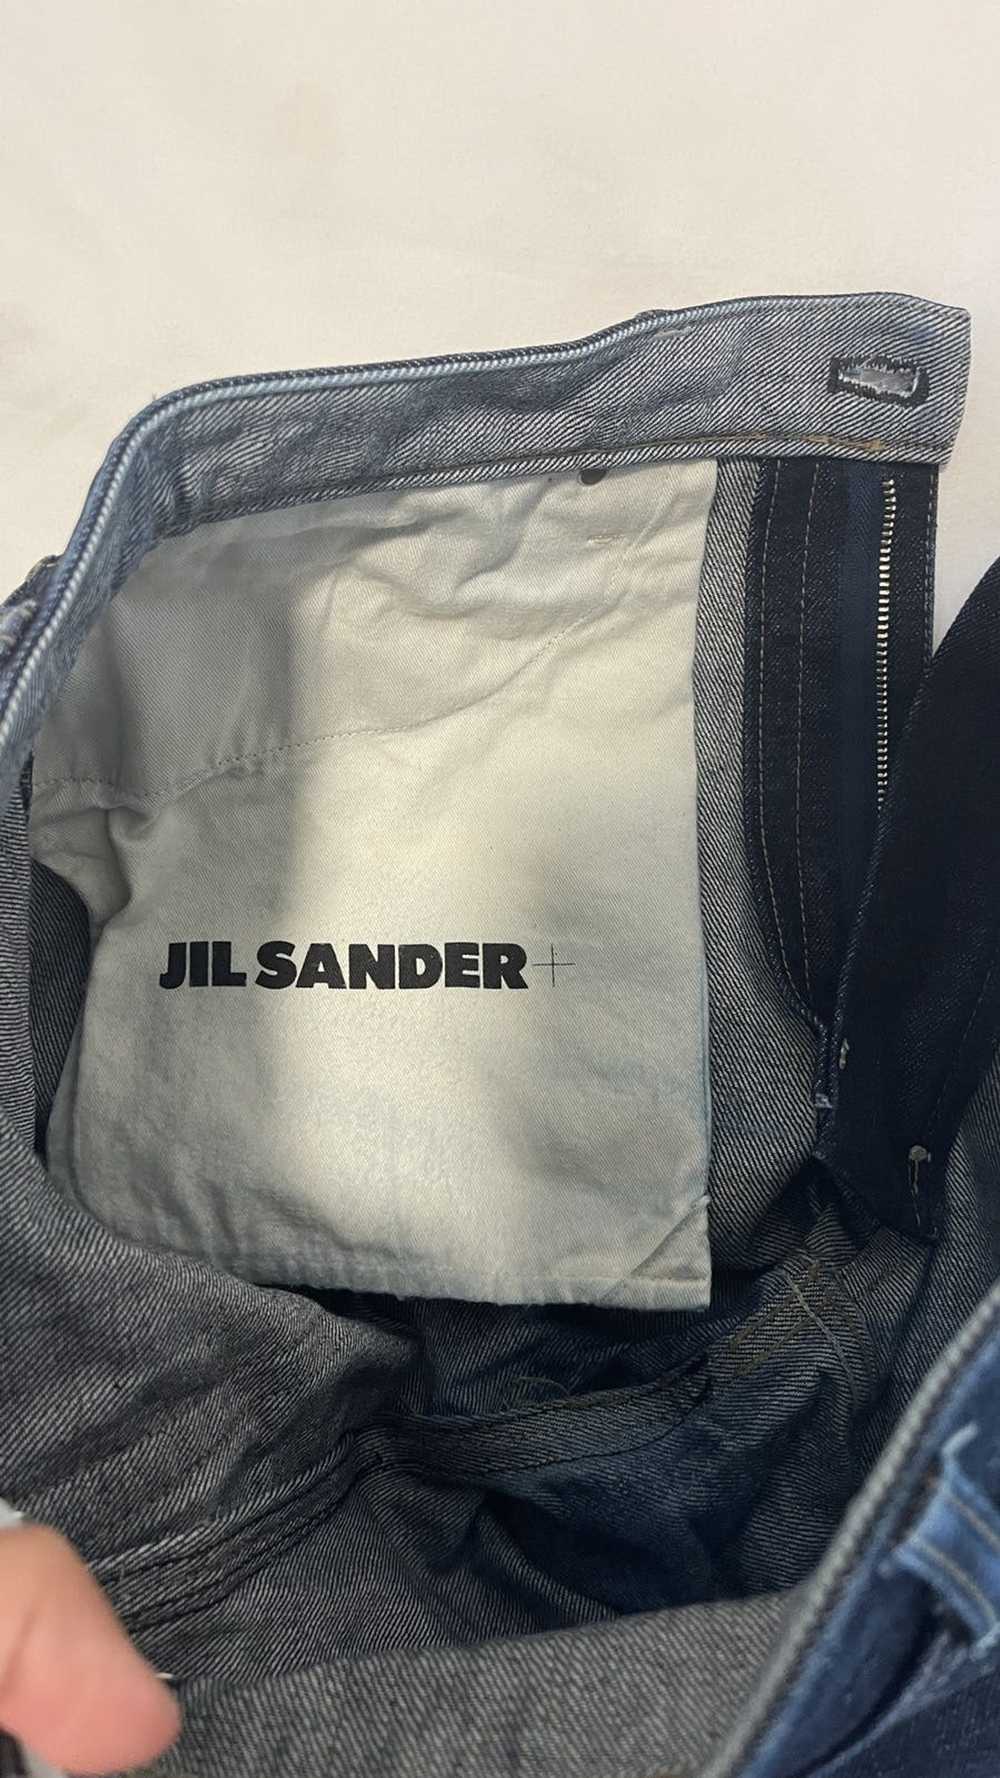 Jil Sander JIL SANDER Japanese Denim Jeans - image 7